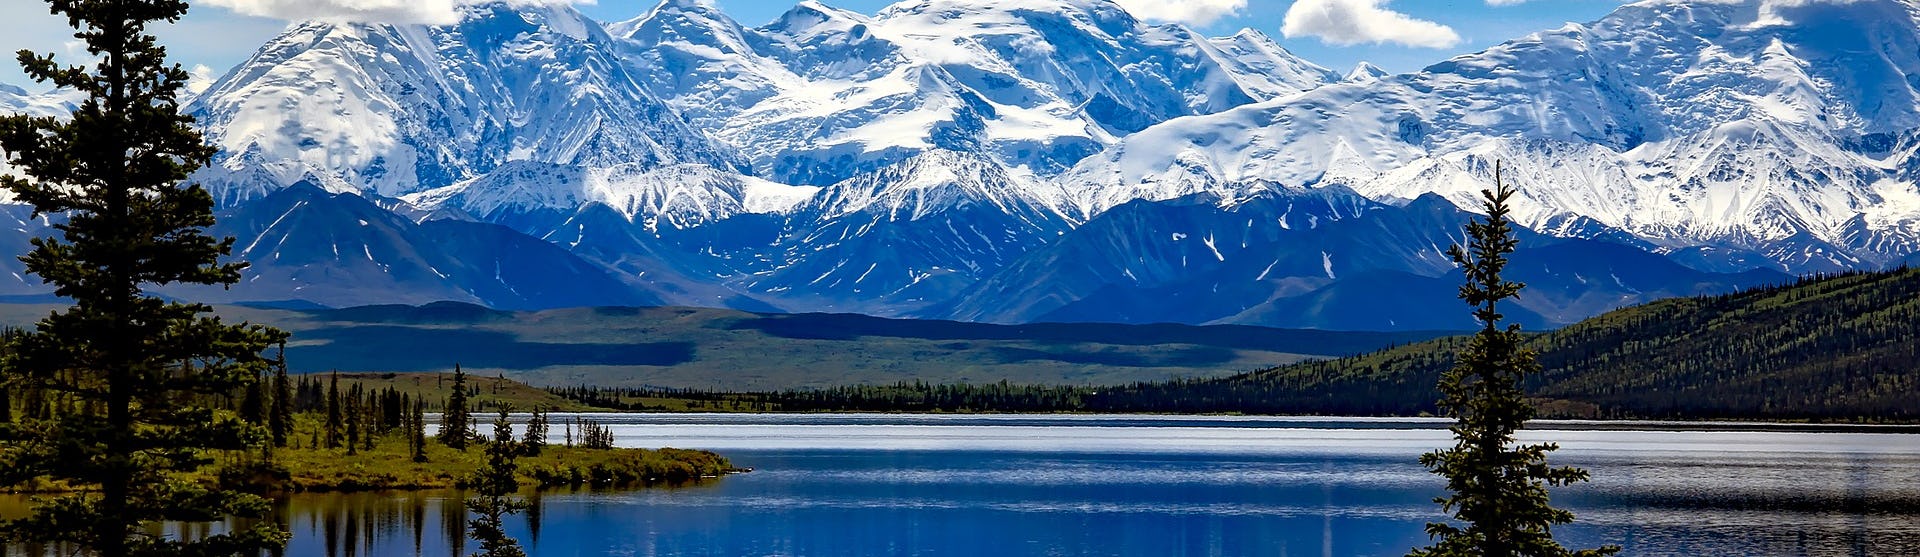 Alaskas oslagbara natur med skog, snötäckta berg och stilla vatten.